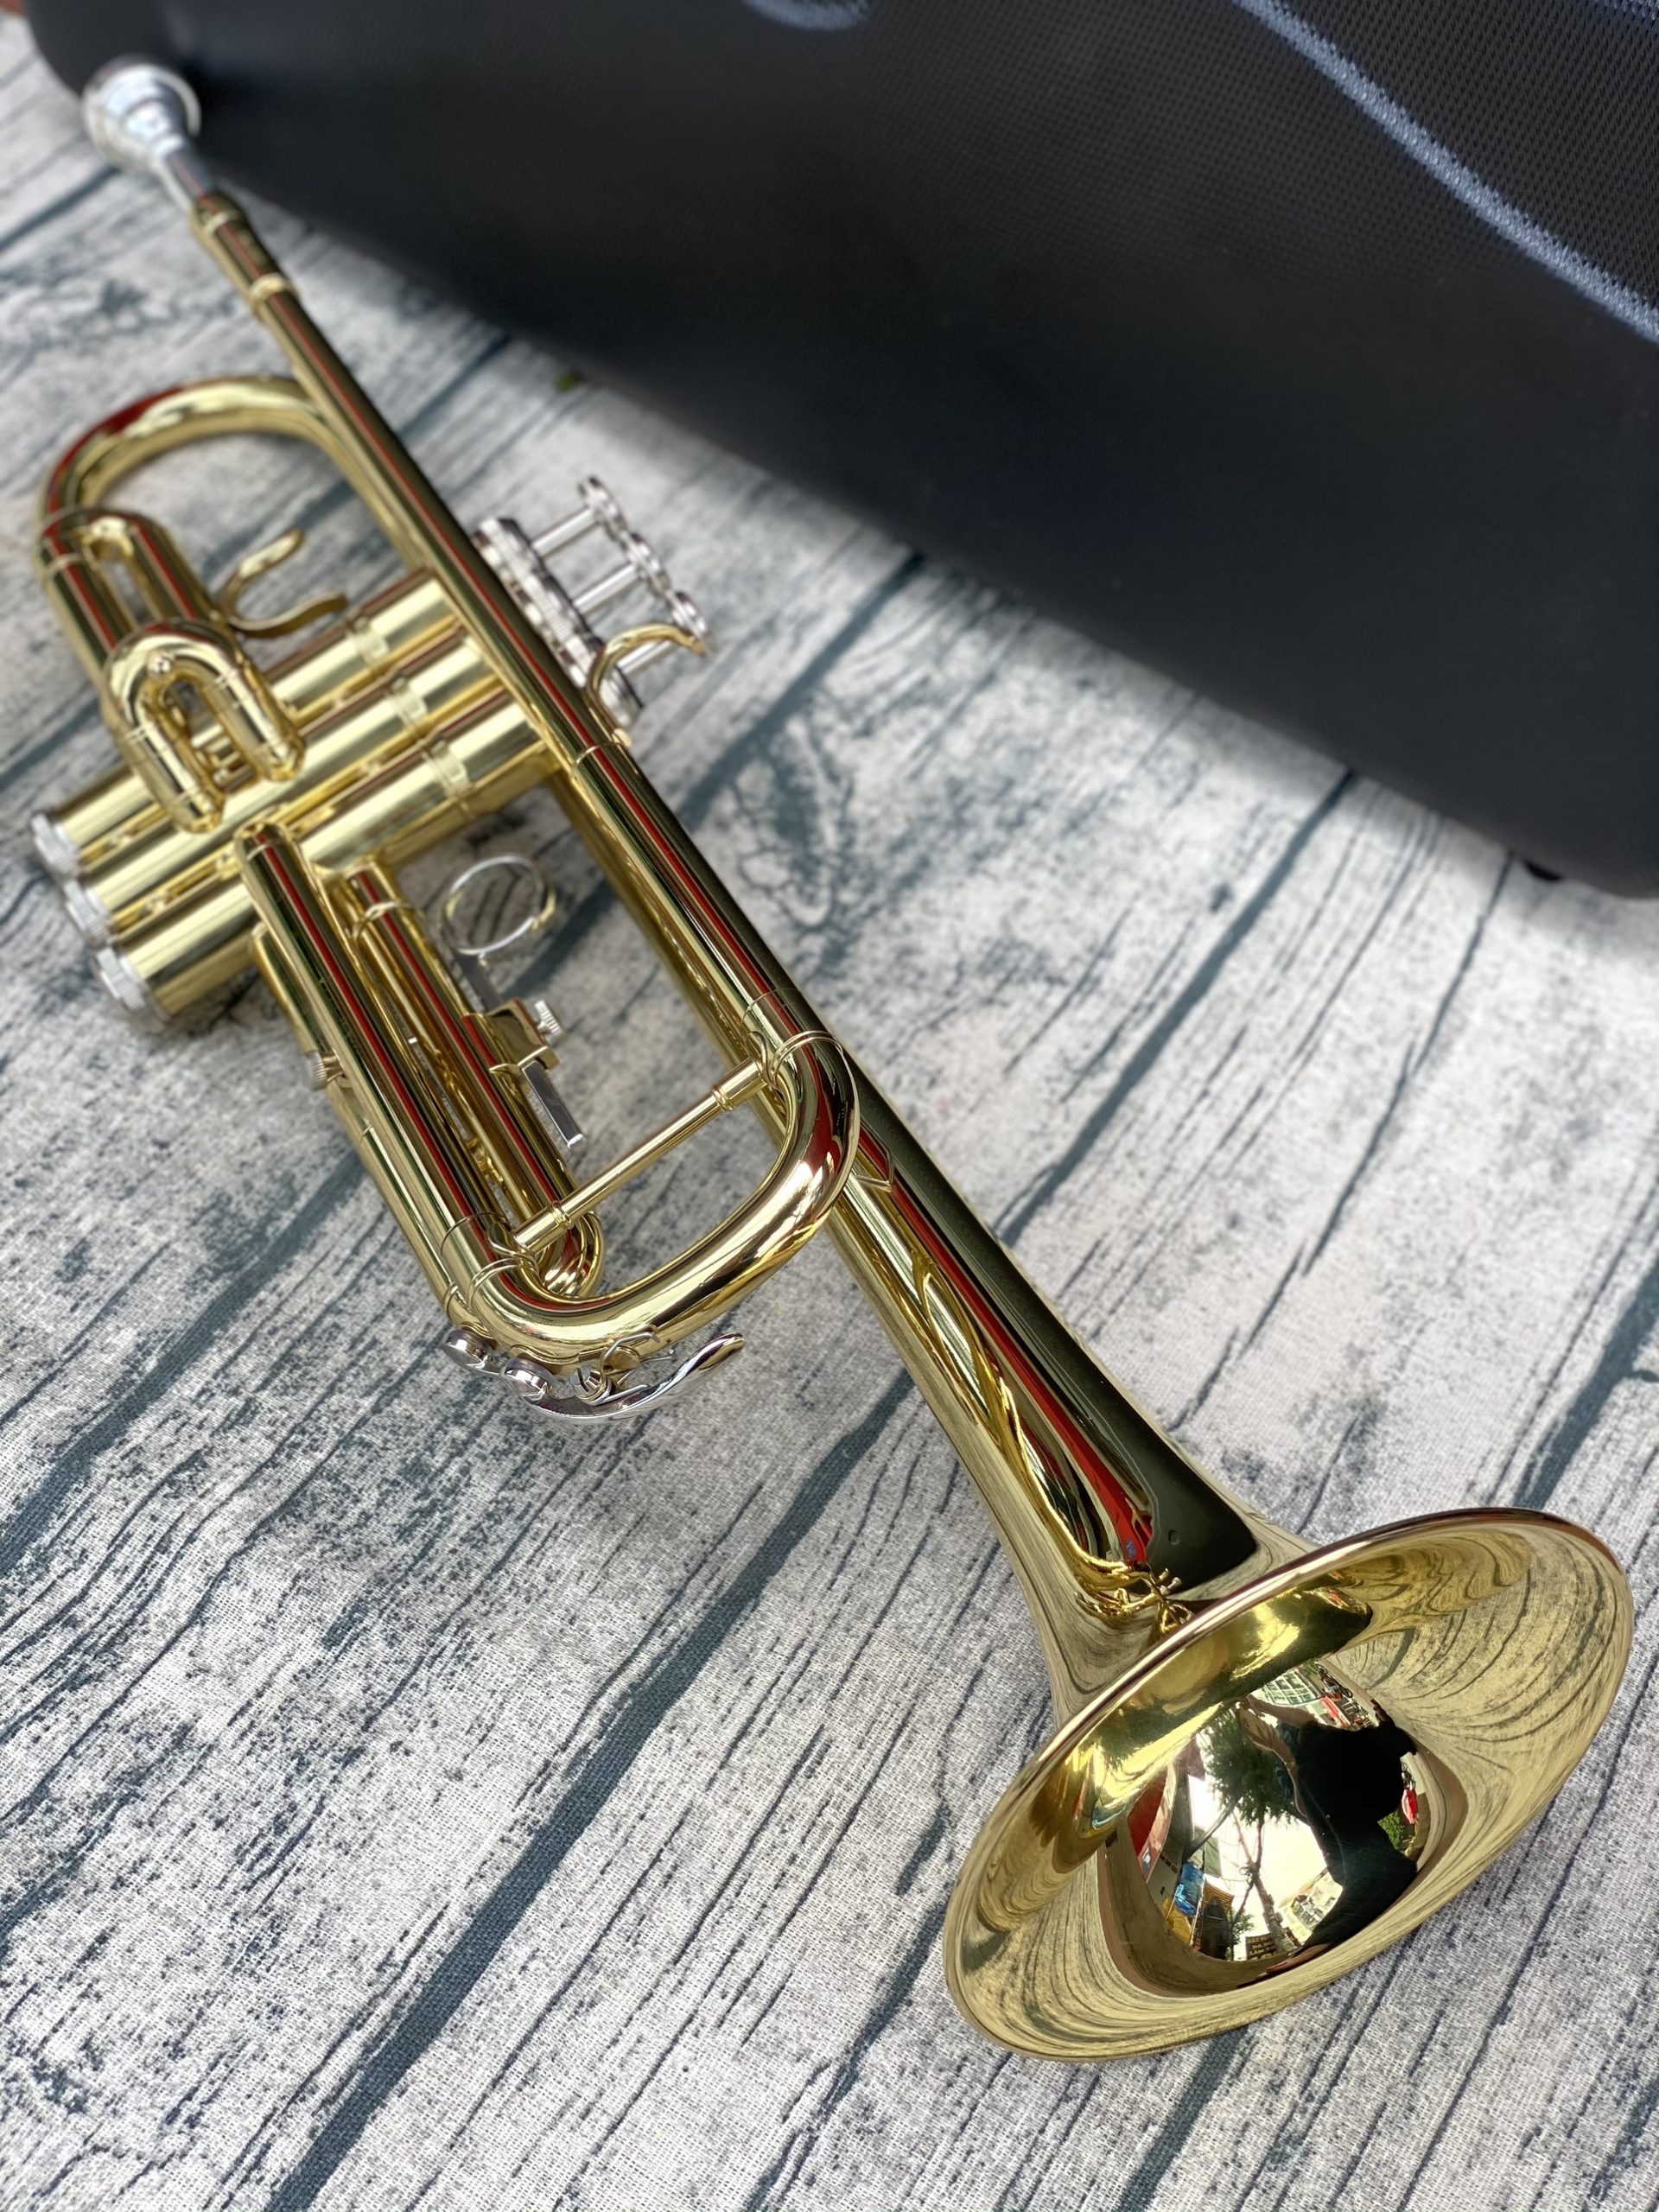 Kèn trumpet Selmer TR300